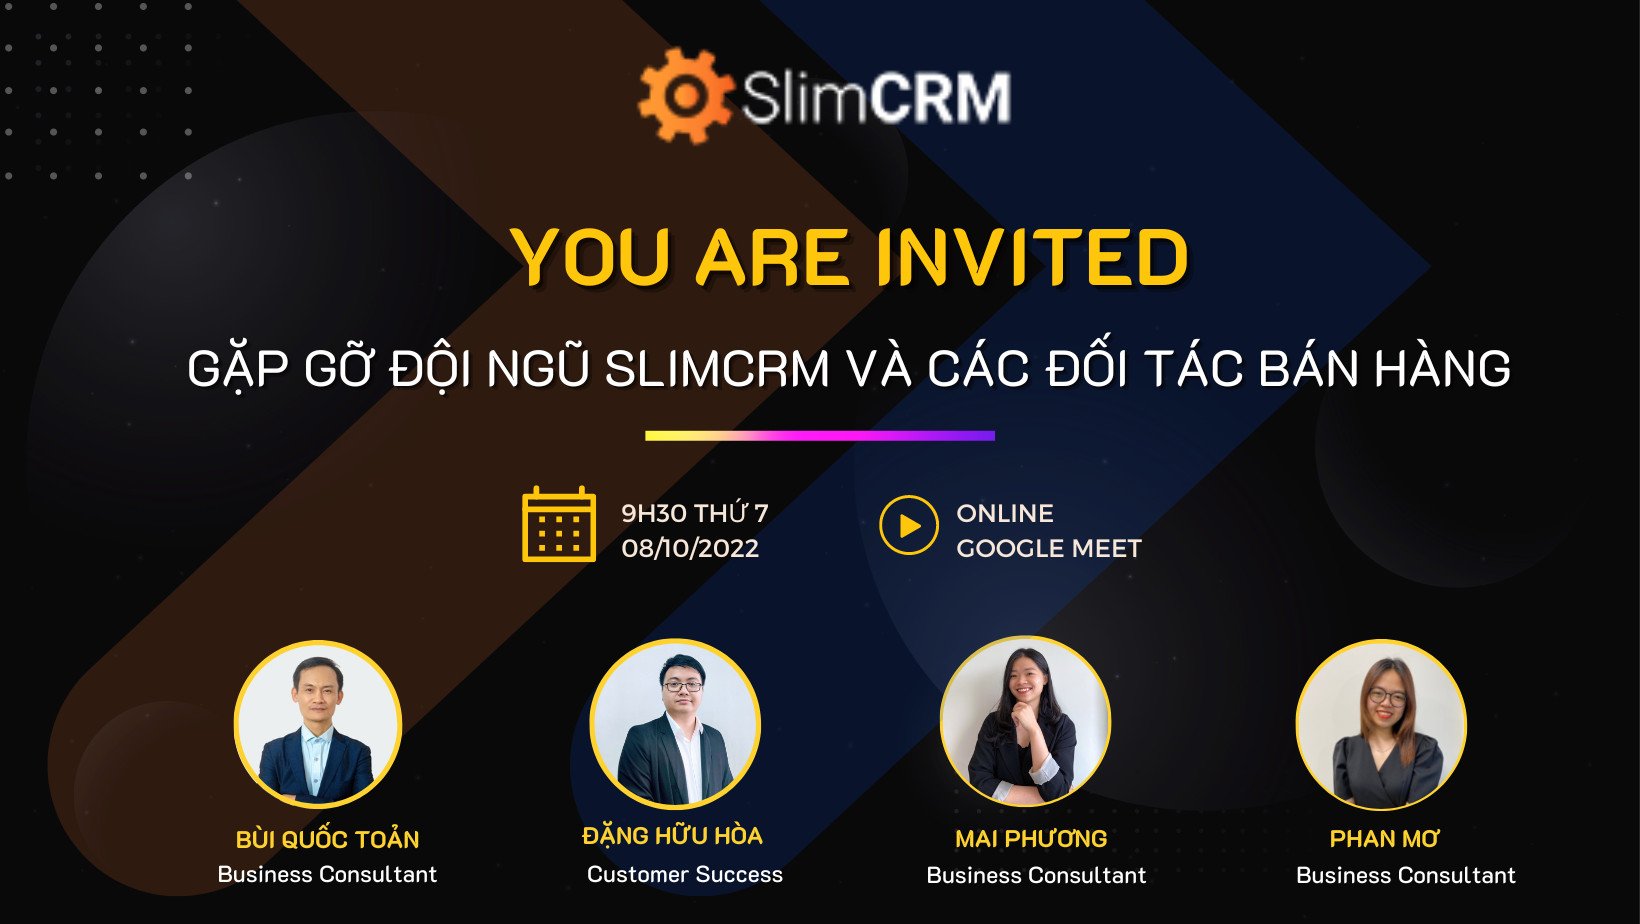 Business Partner Meeting: Gặp gỡ đội ngũ SlimCRM và các đối tác bán hàng.